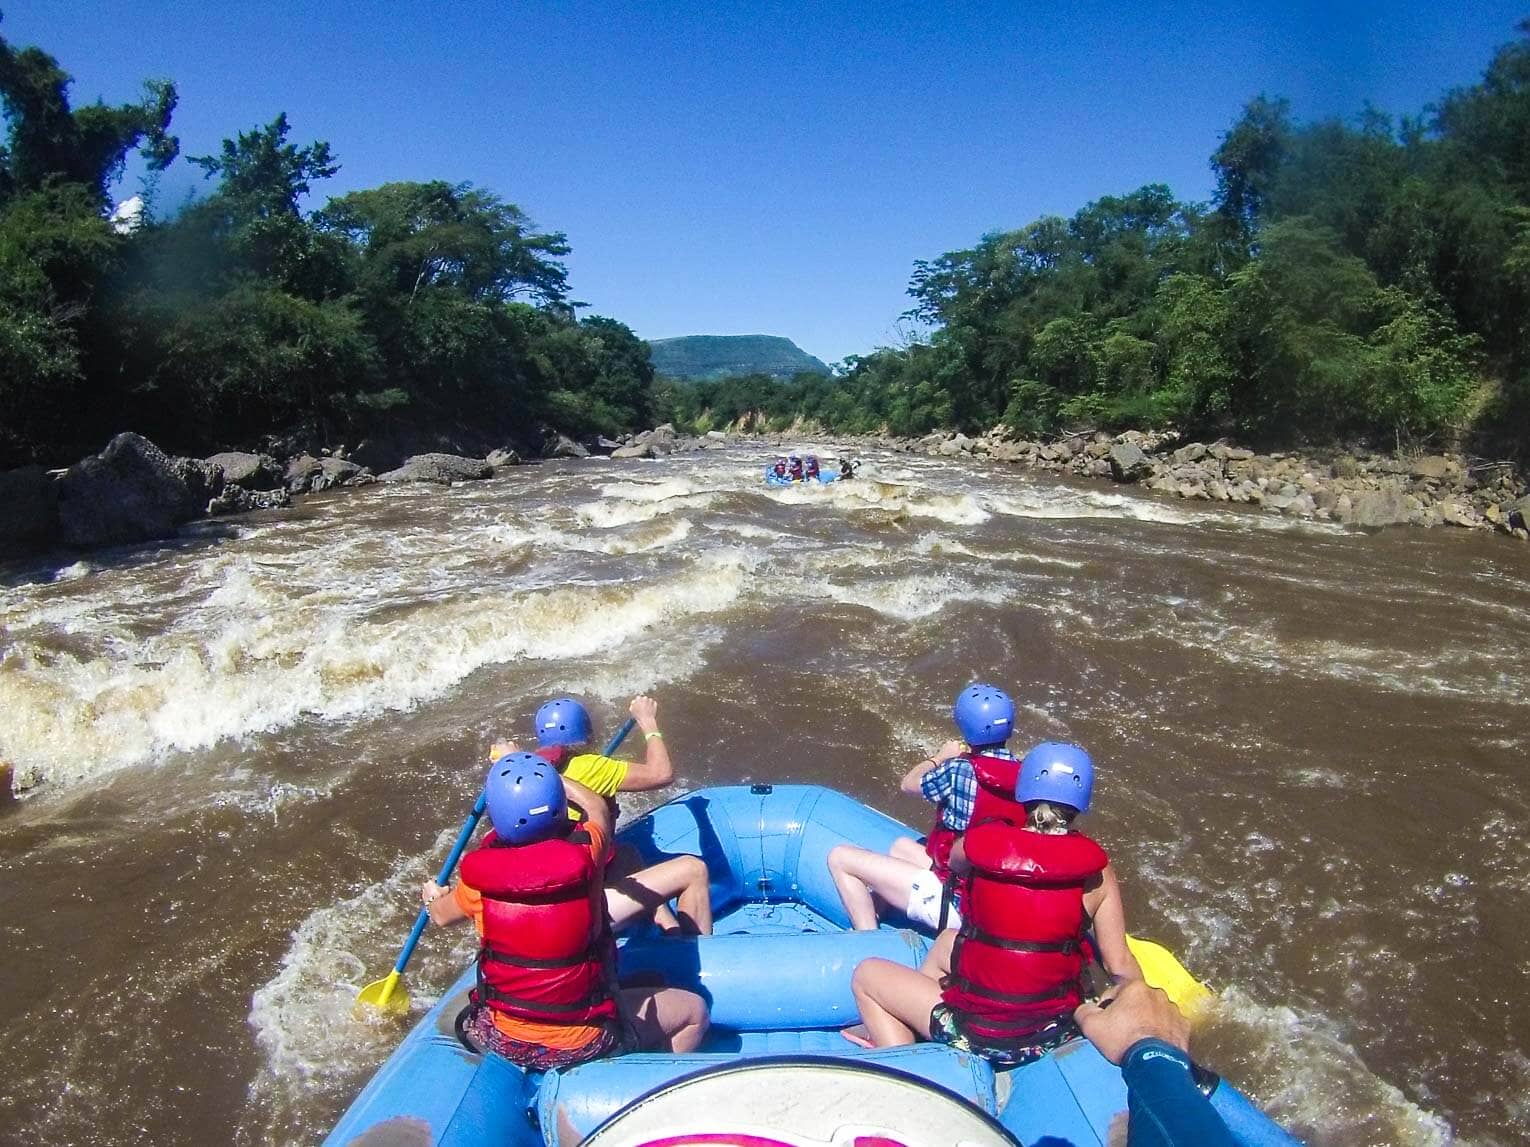 Rafting à San Gil dans le rio Suarez en Colombie